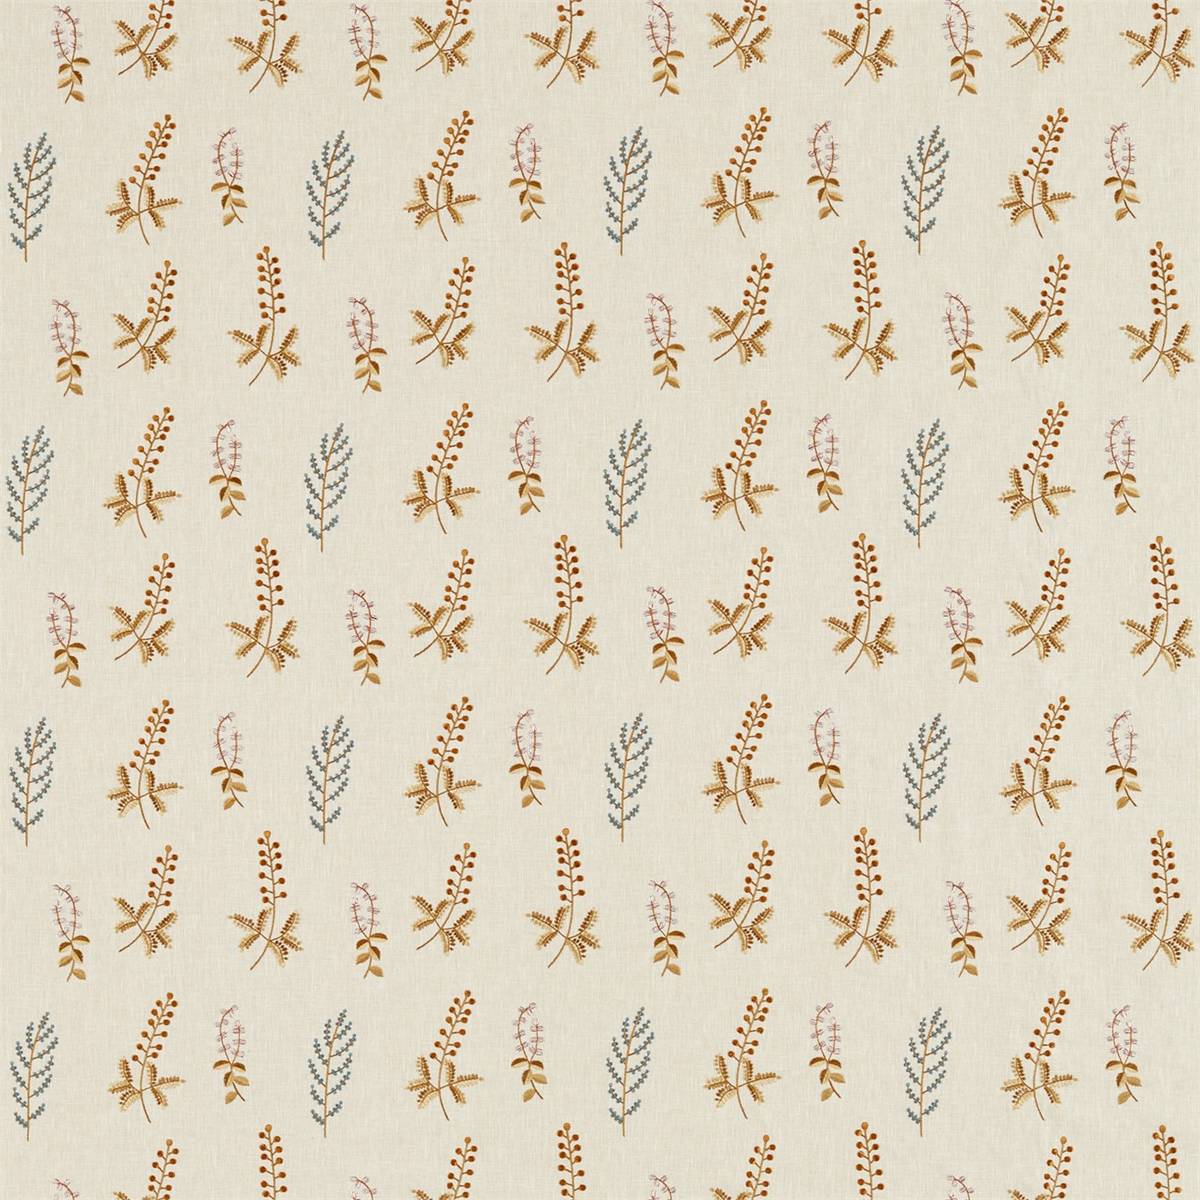 Bilberry Denim/Barley Fabric by Sanderson